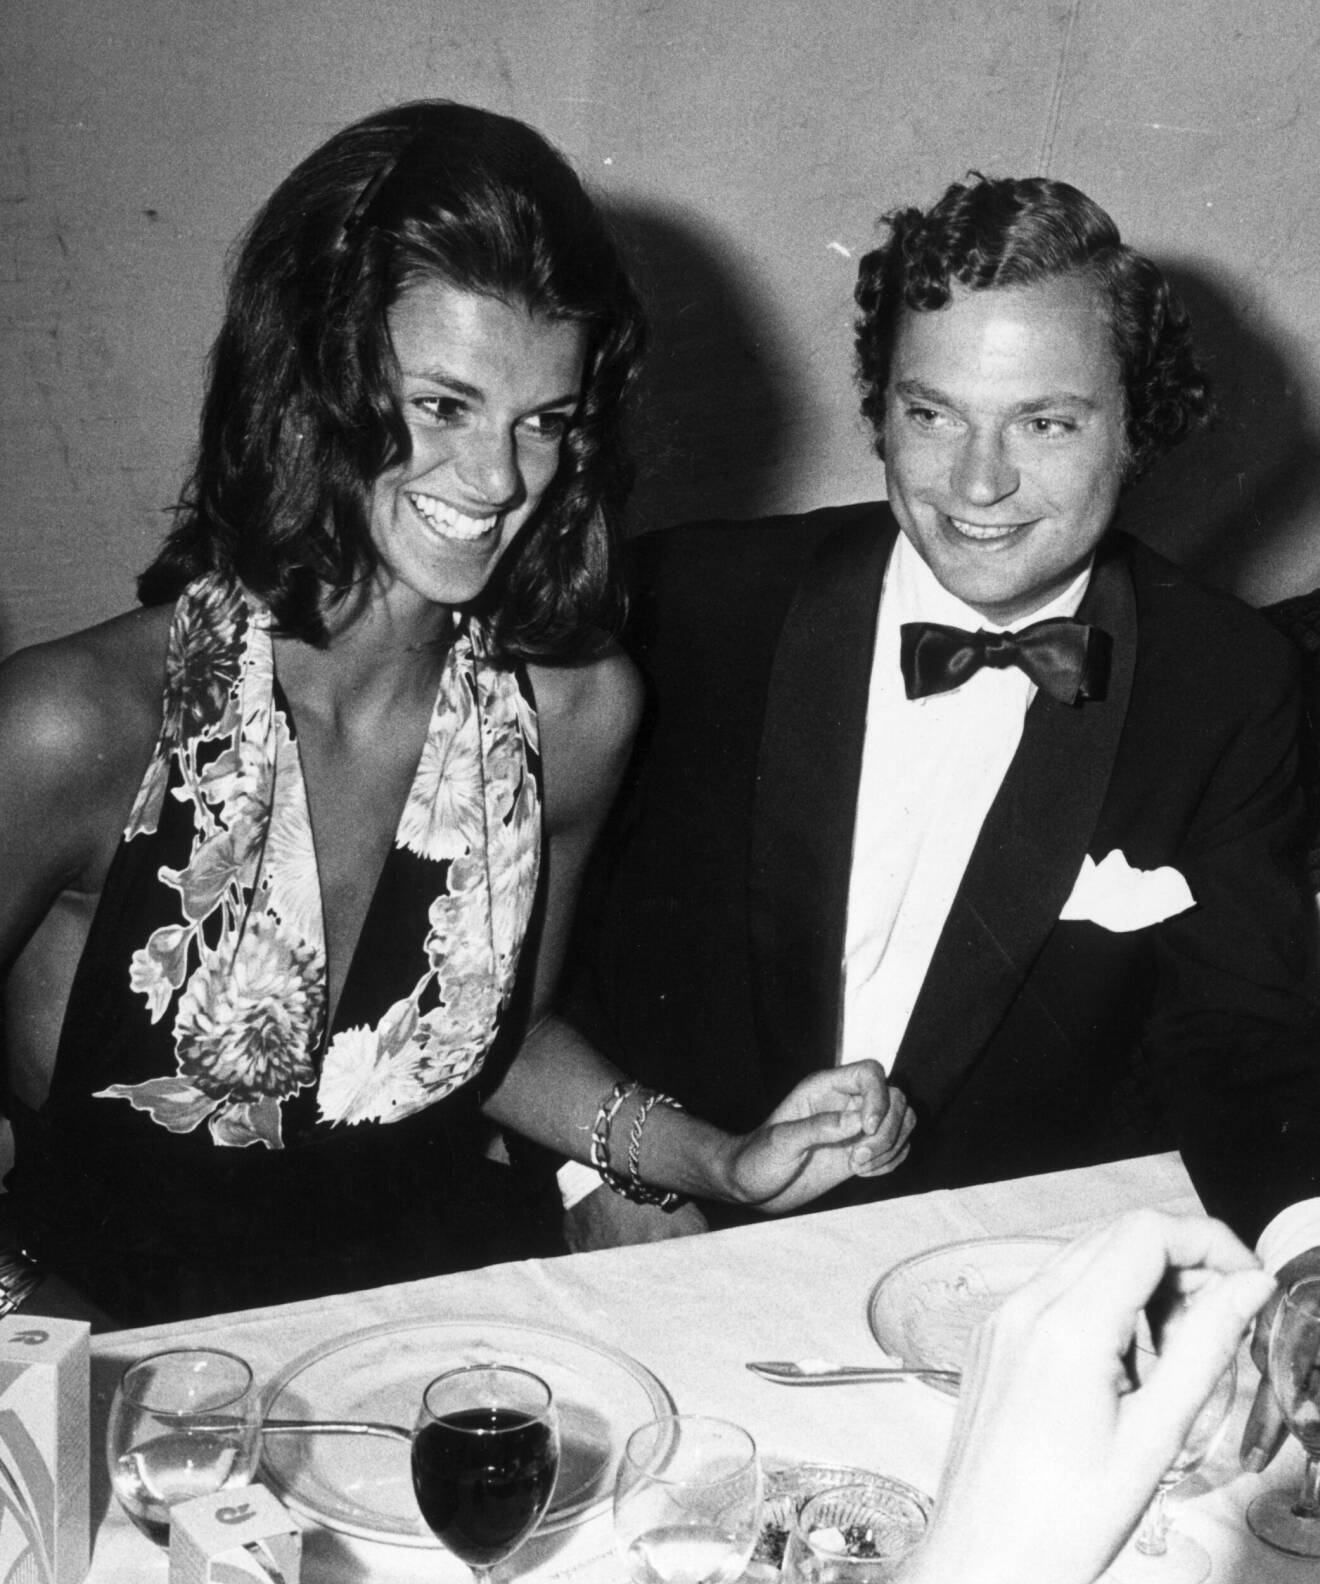 Kronprinsen Carl Gustaf fångad på bild tillsammans med Charlotte Klingspor år 1973 på en middag.